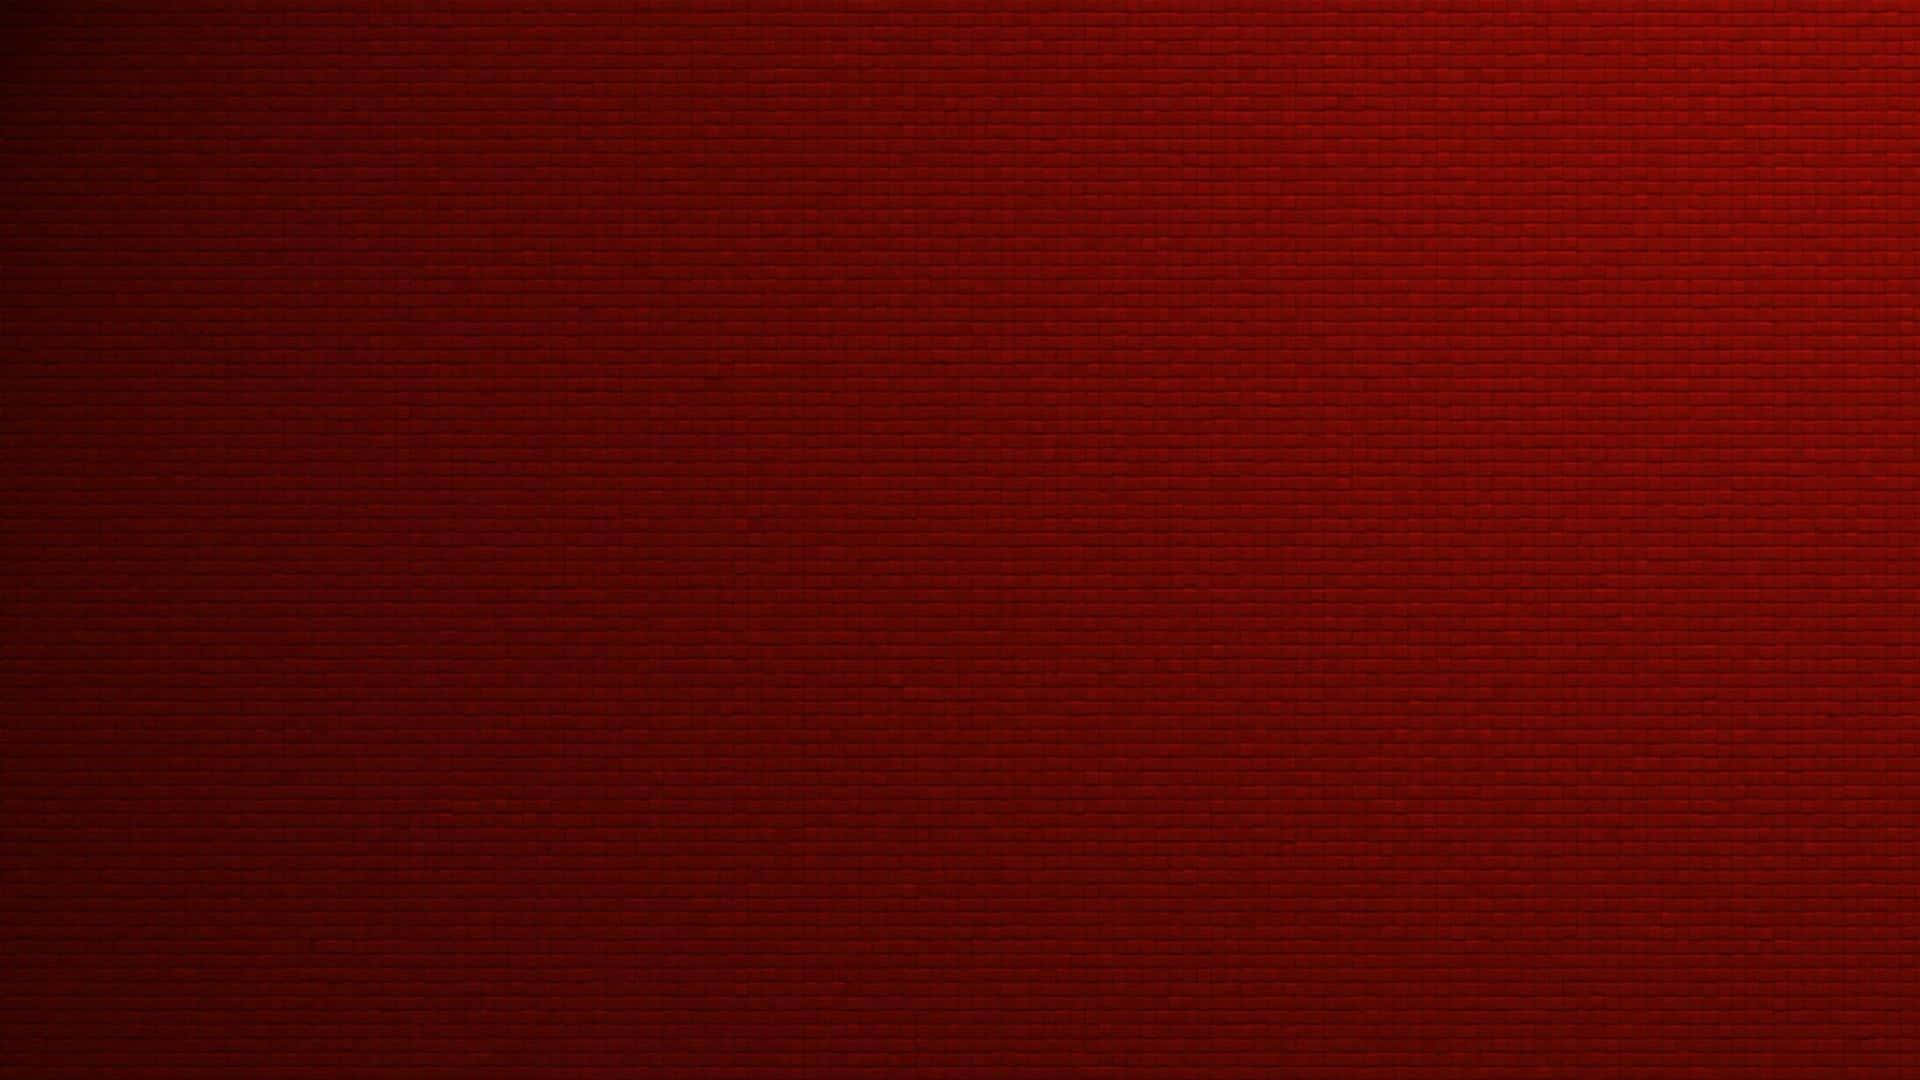 Enensfarvet Rød Baggrund På 1920 X 1080 Pixels.